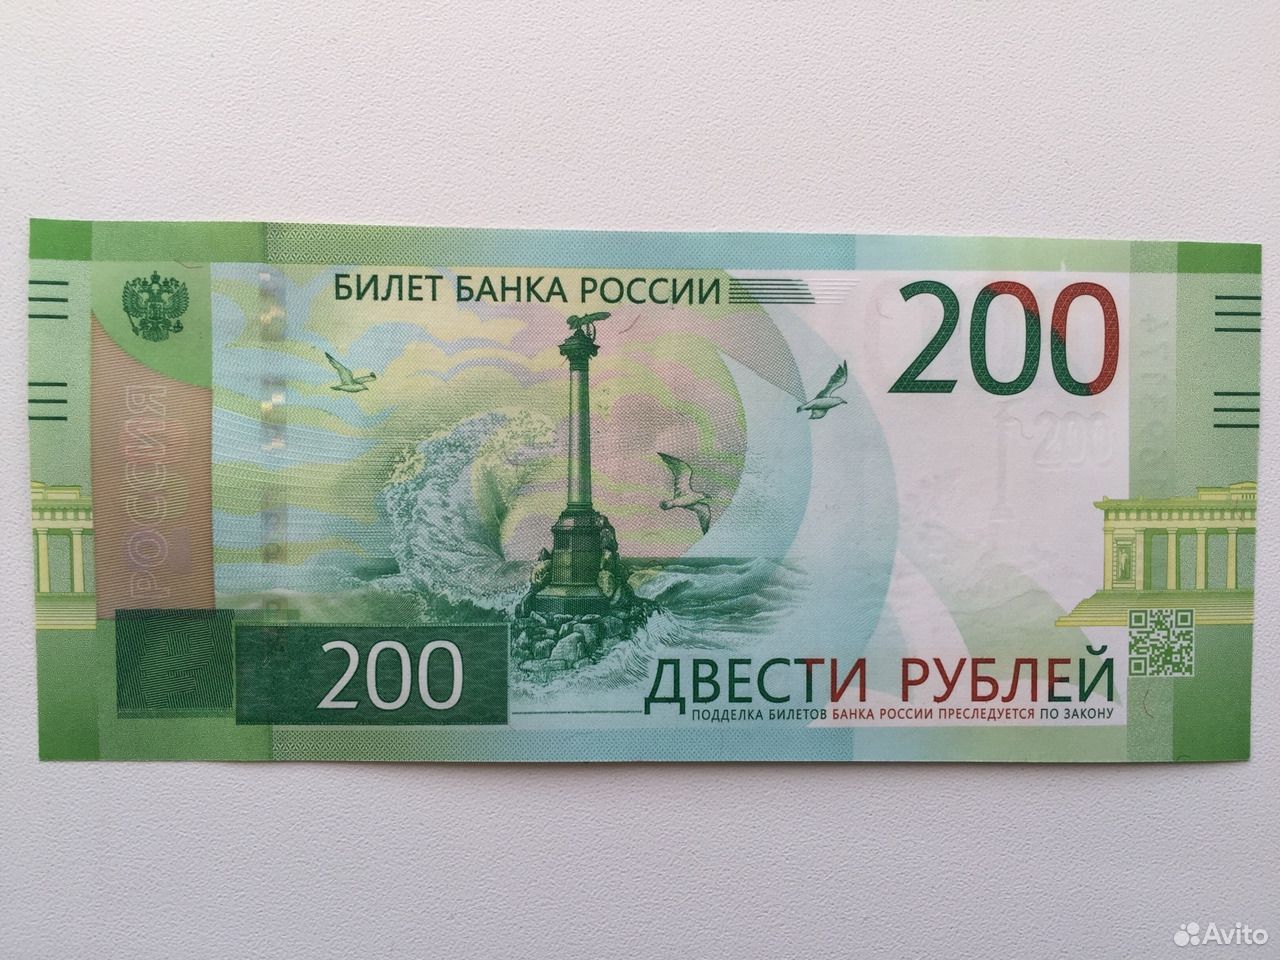 200 рублей t. 200 Рублей 2017 года. 200 Рублей купюра 2017. Купюра 200 рублей 2017 года. 200 Рублей банкнота.